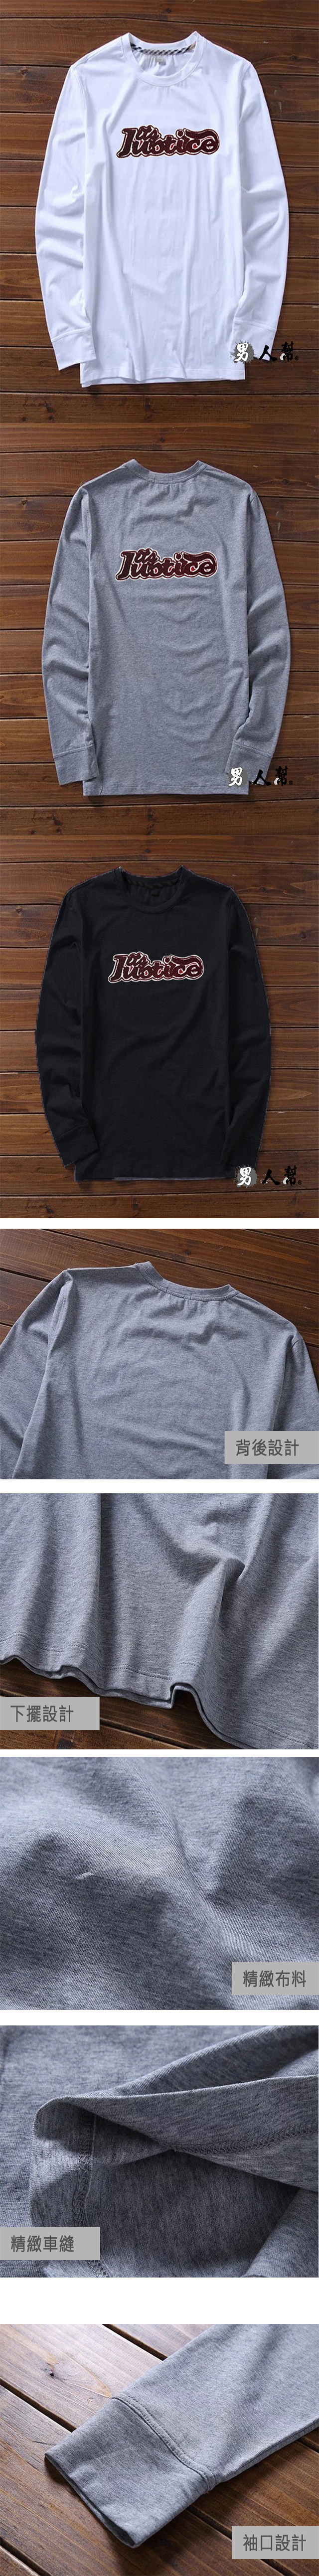 男人幫 T5690台灣製美式貼布立體圖純棉情侶T恤